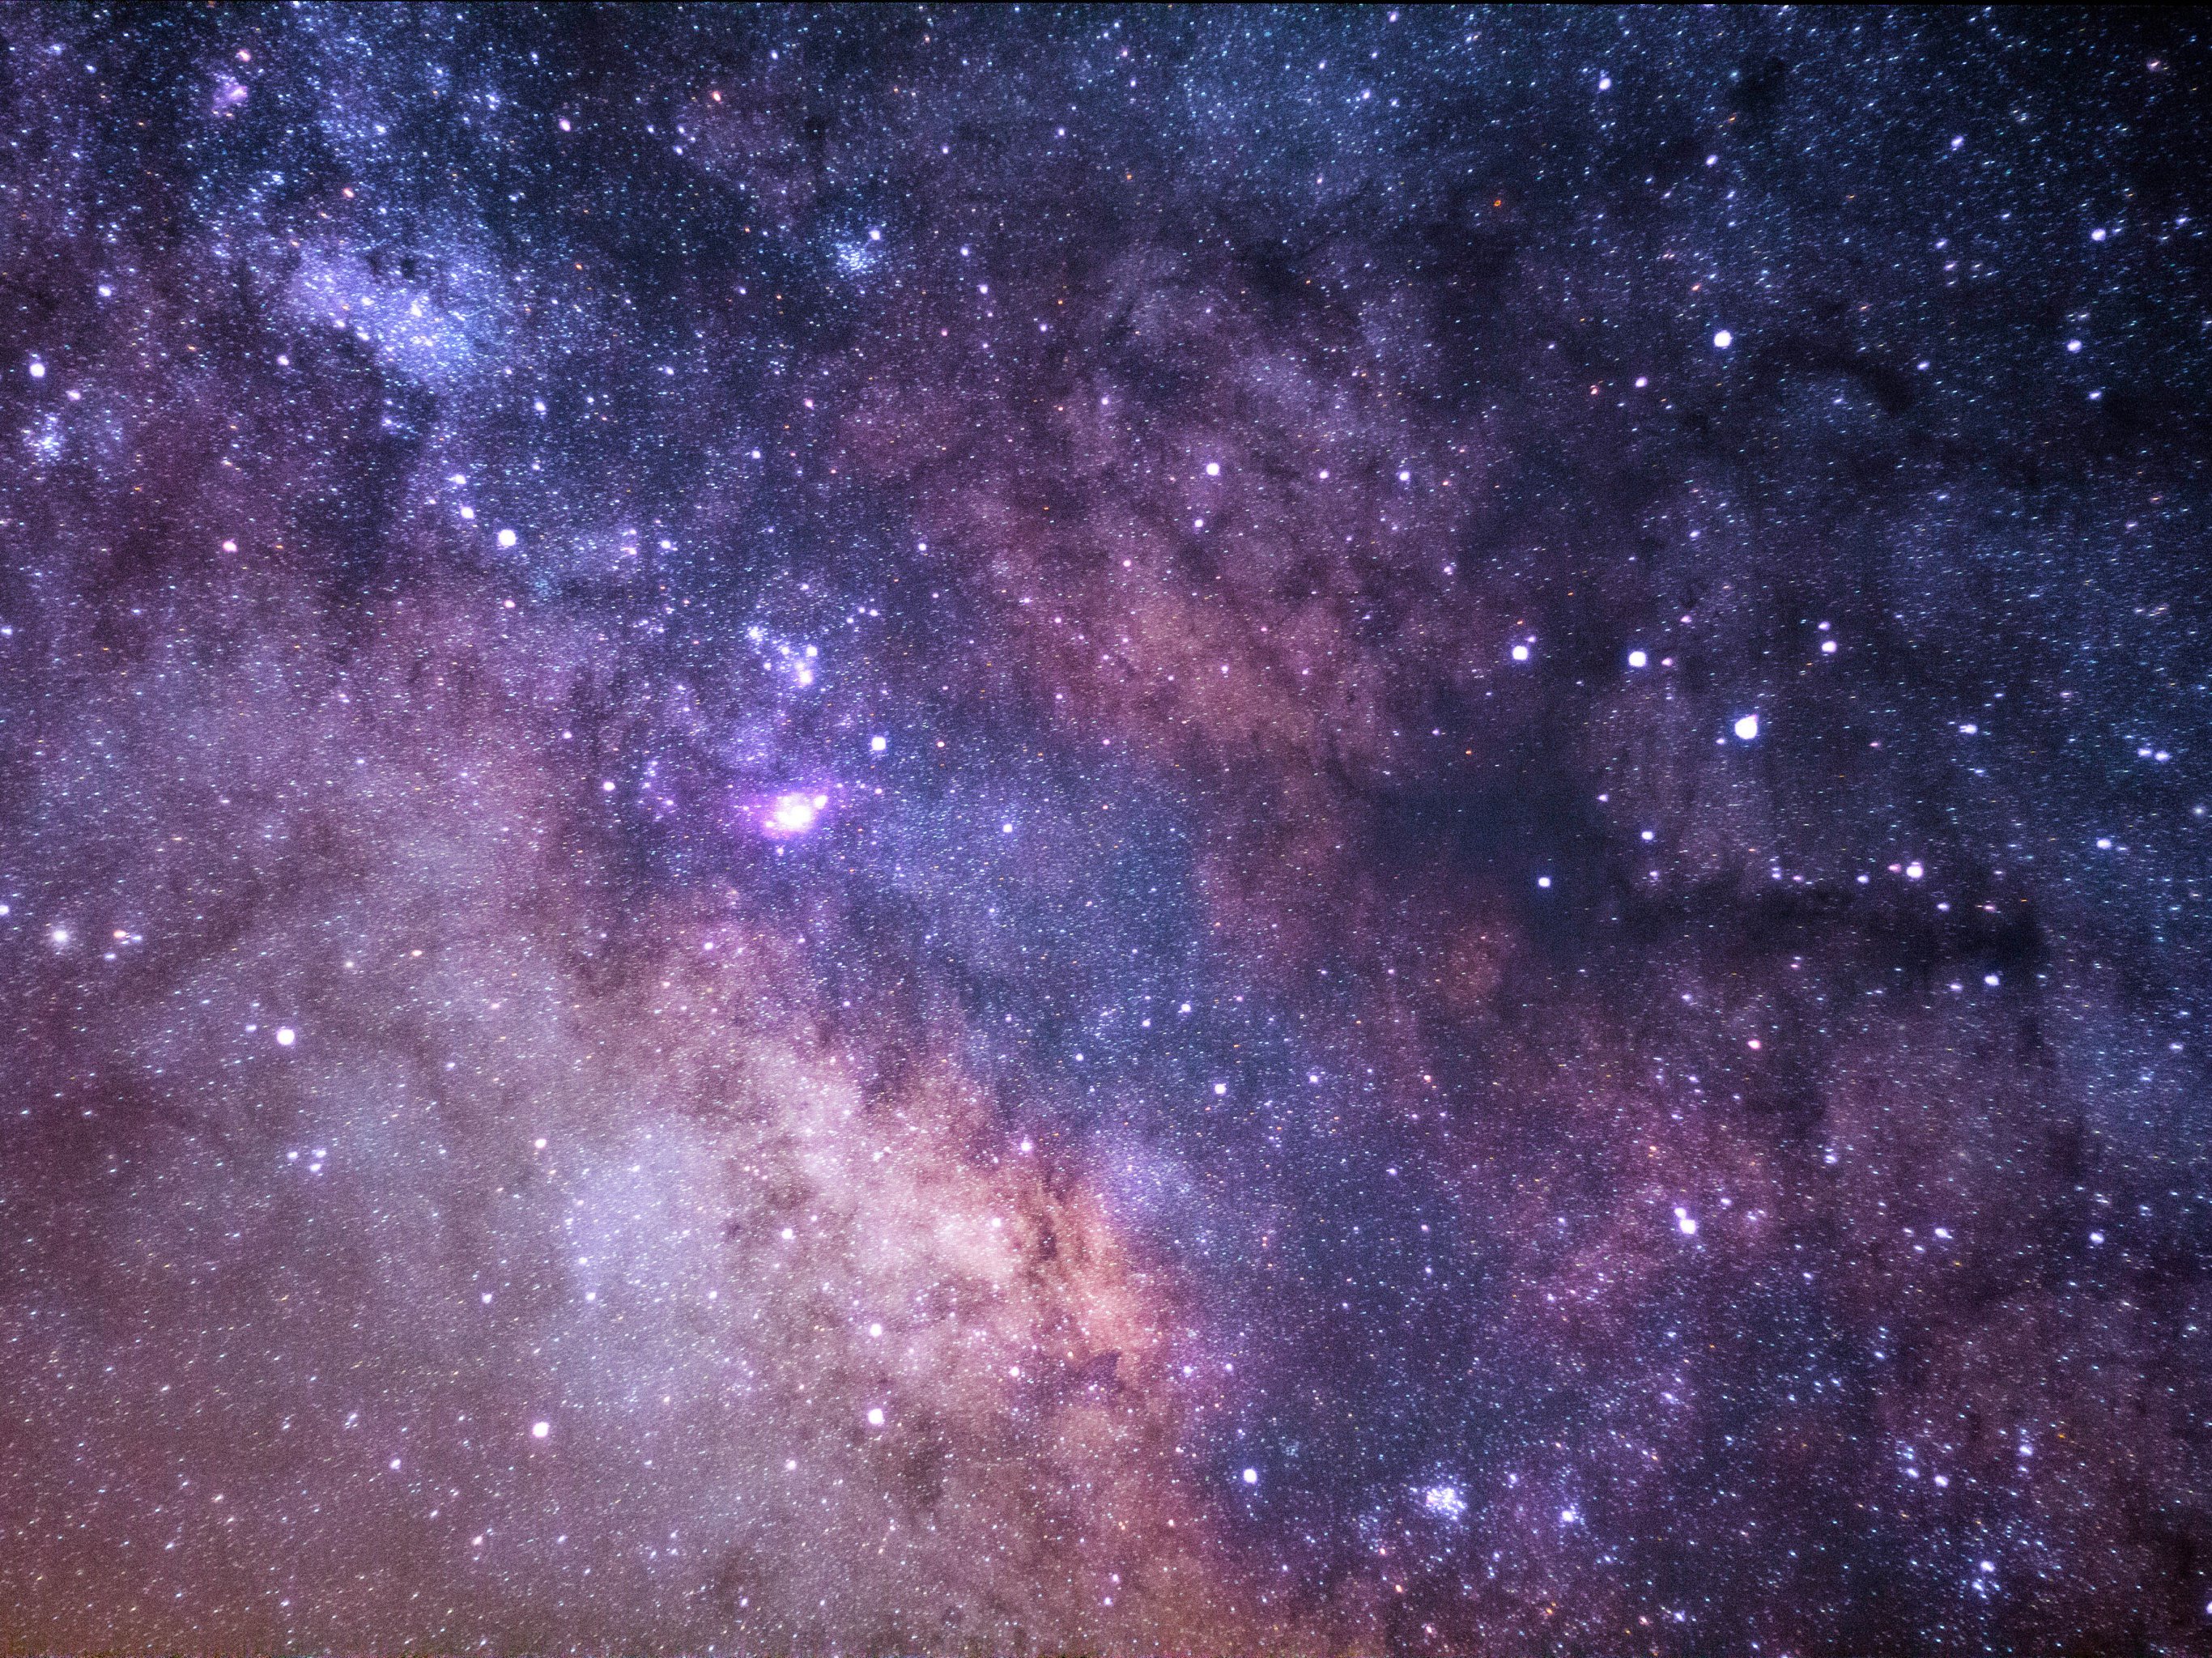 Galaxy wallpaper background: Cảm nhận vẻ đẹp tuyệt vời của vũ trụ bằng bức ảnh nền đẹp như tranh vẽ - Galaxy wallpaper background. Bức hình nền này sẽ đem lại cho bạn một không gian lãng mạn và đầy trẻ trung.